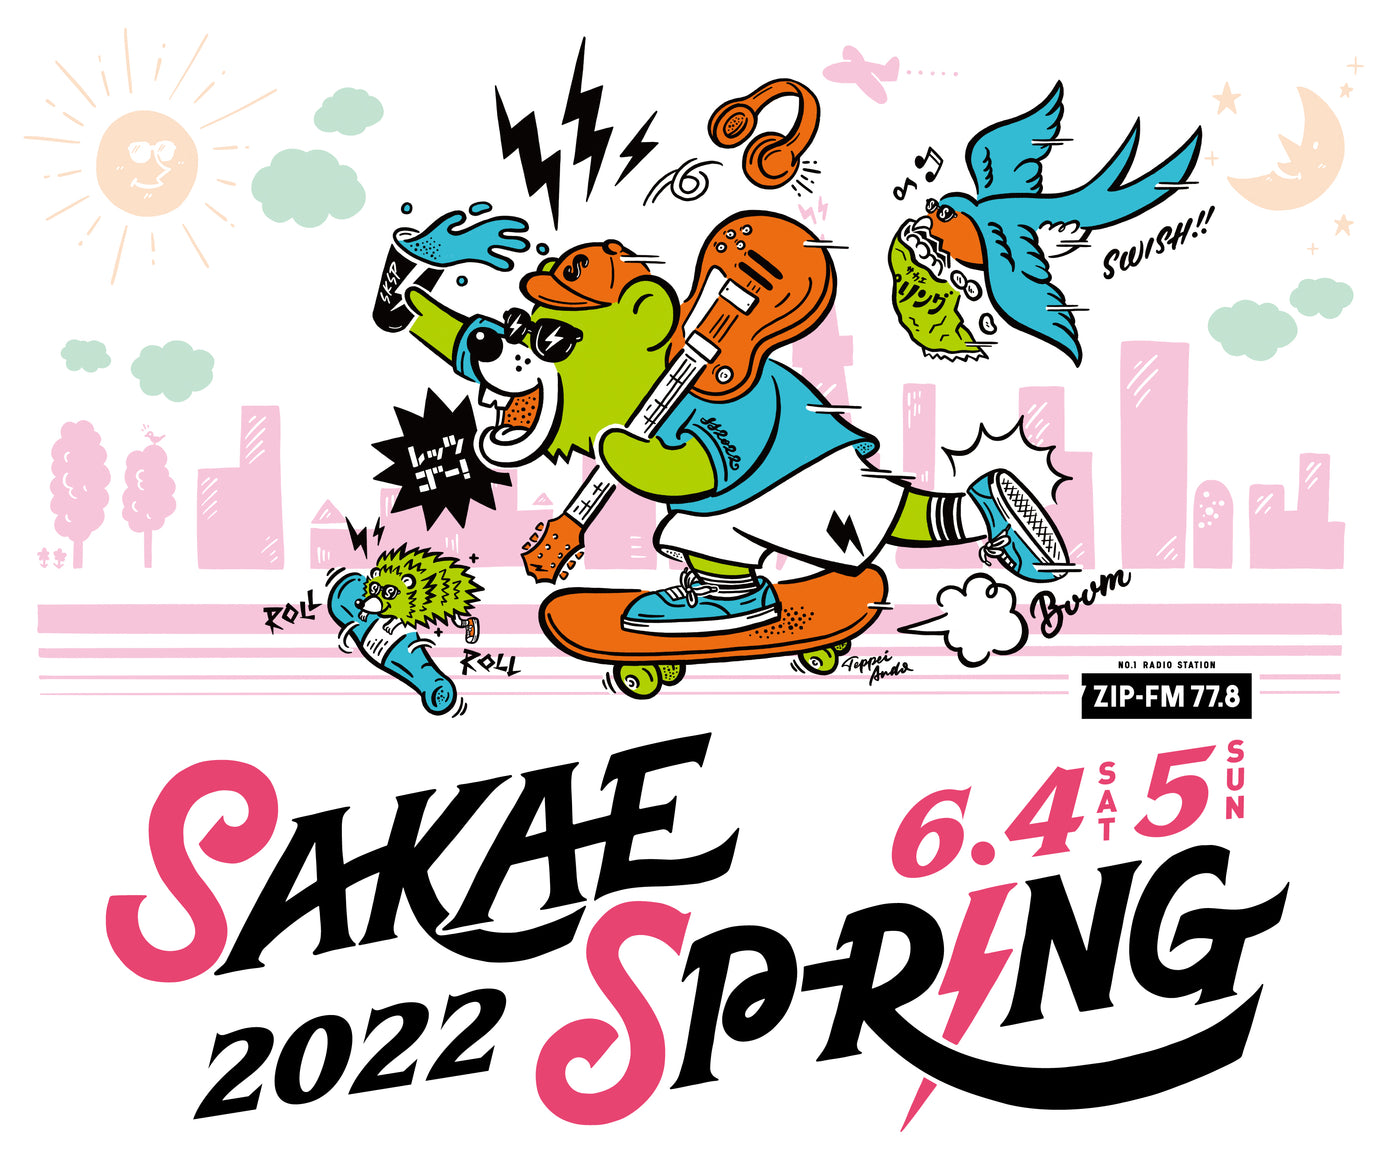 SAKAE SP-RING 2022 出演決定！